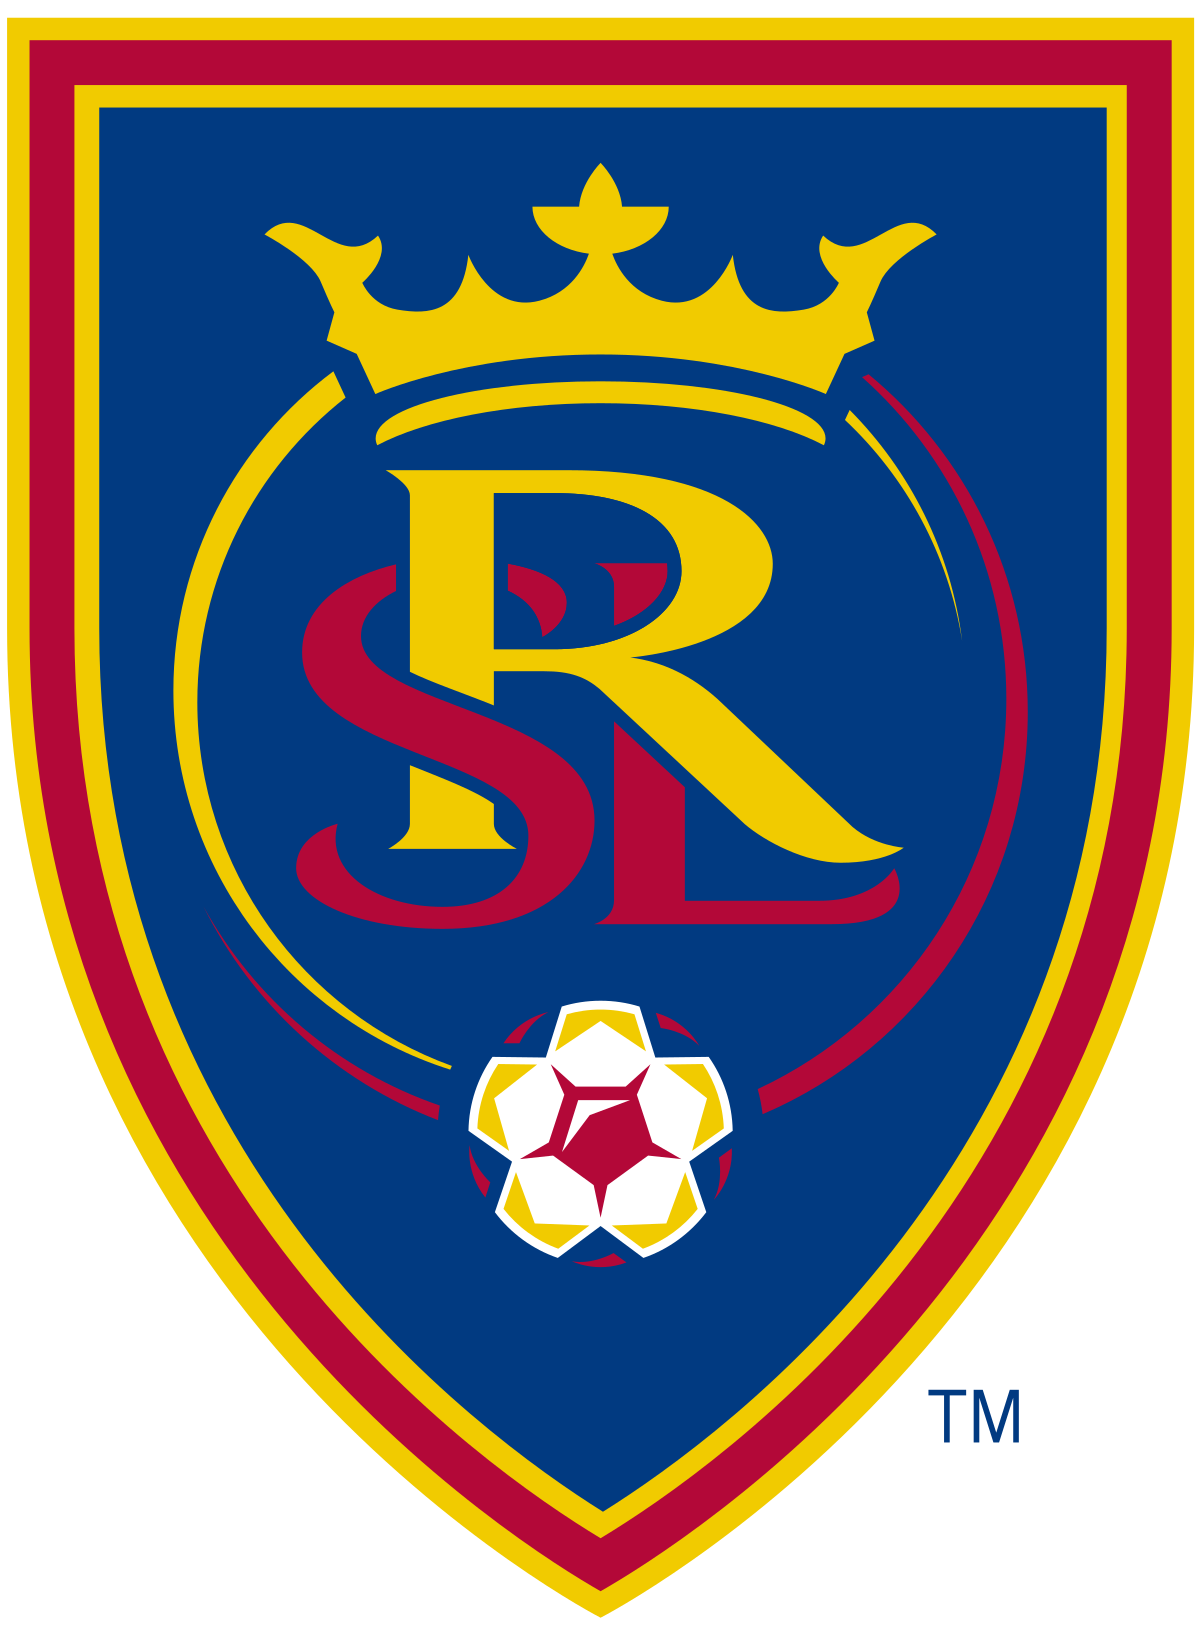 FIFA Champions Badge – Wikipedia